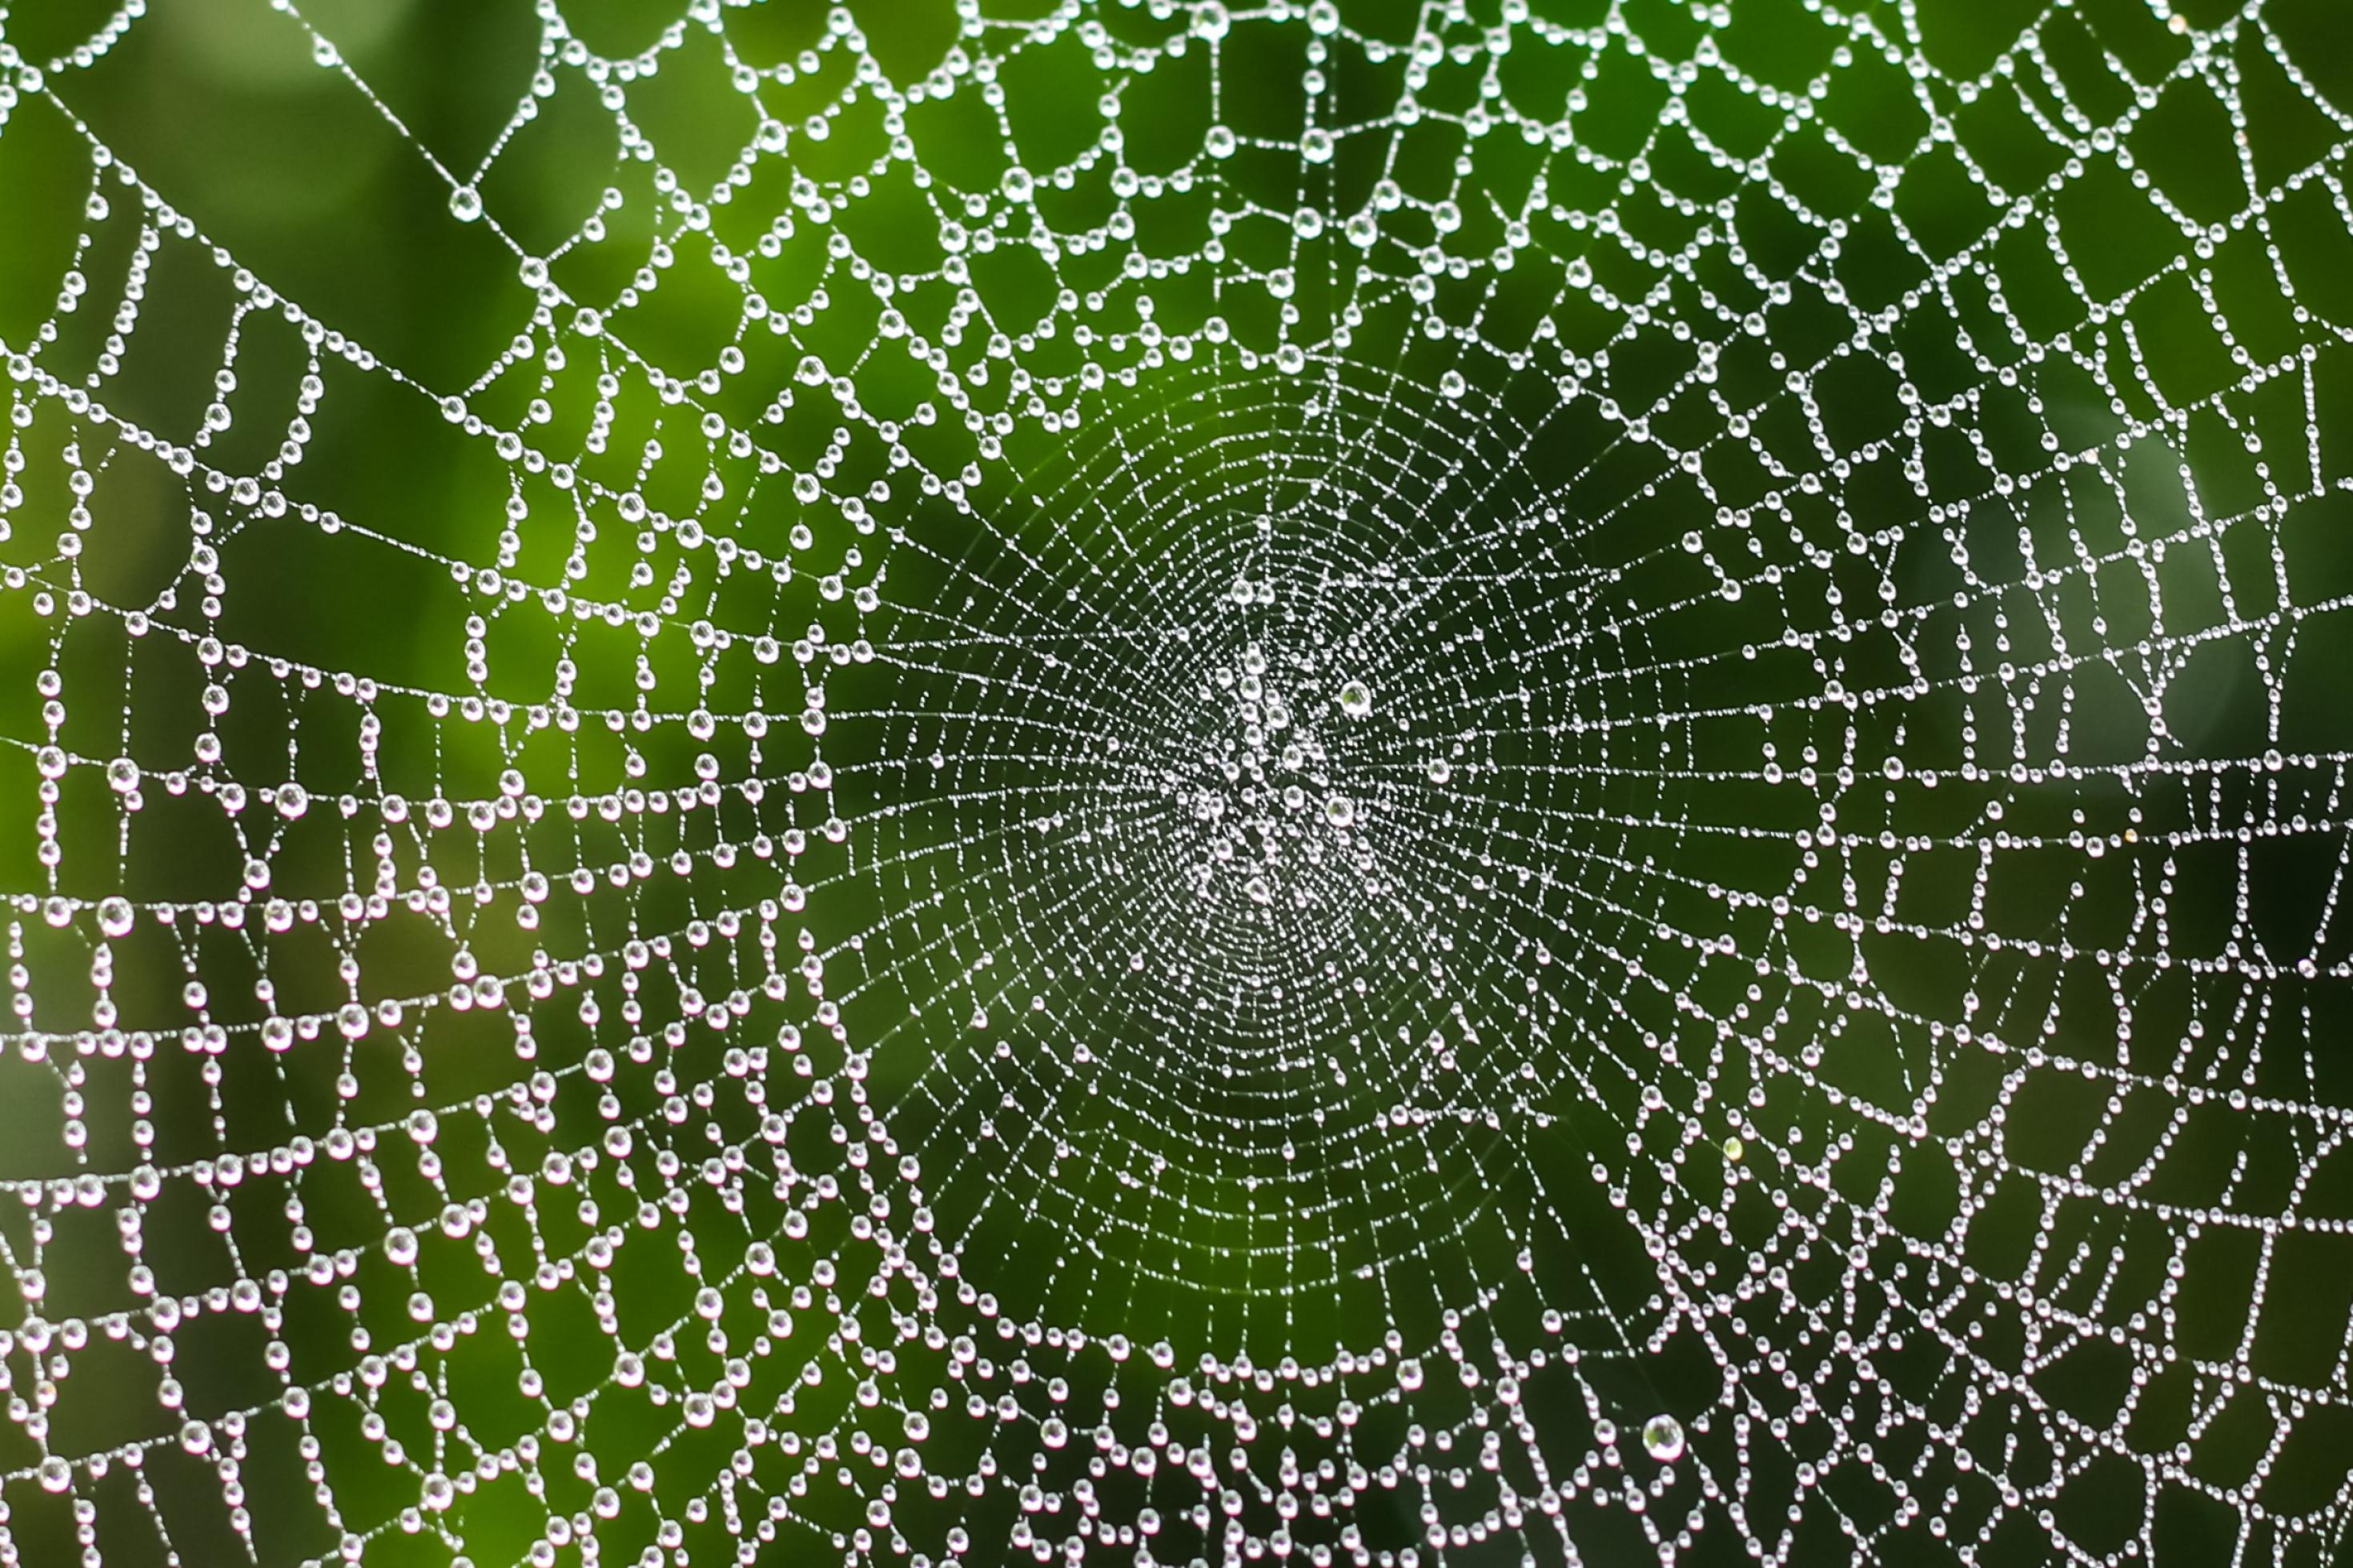 Ein großes Spinnennetz hängt vor einem grünen Hintergrund. An den Spinnfäden befinden sich viele Regentropfen.